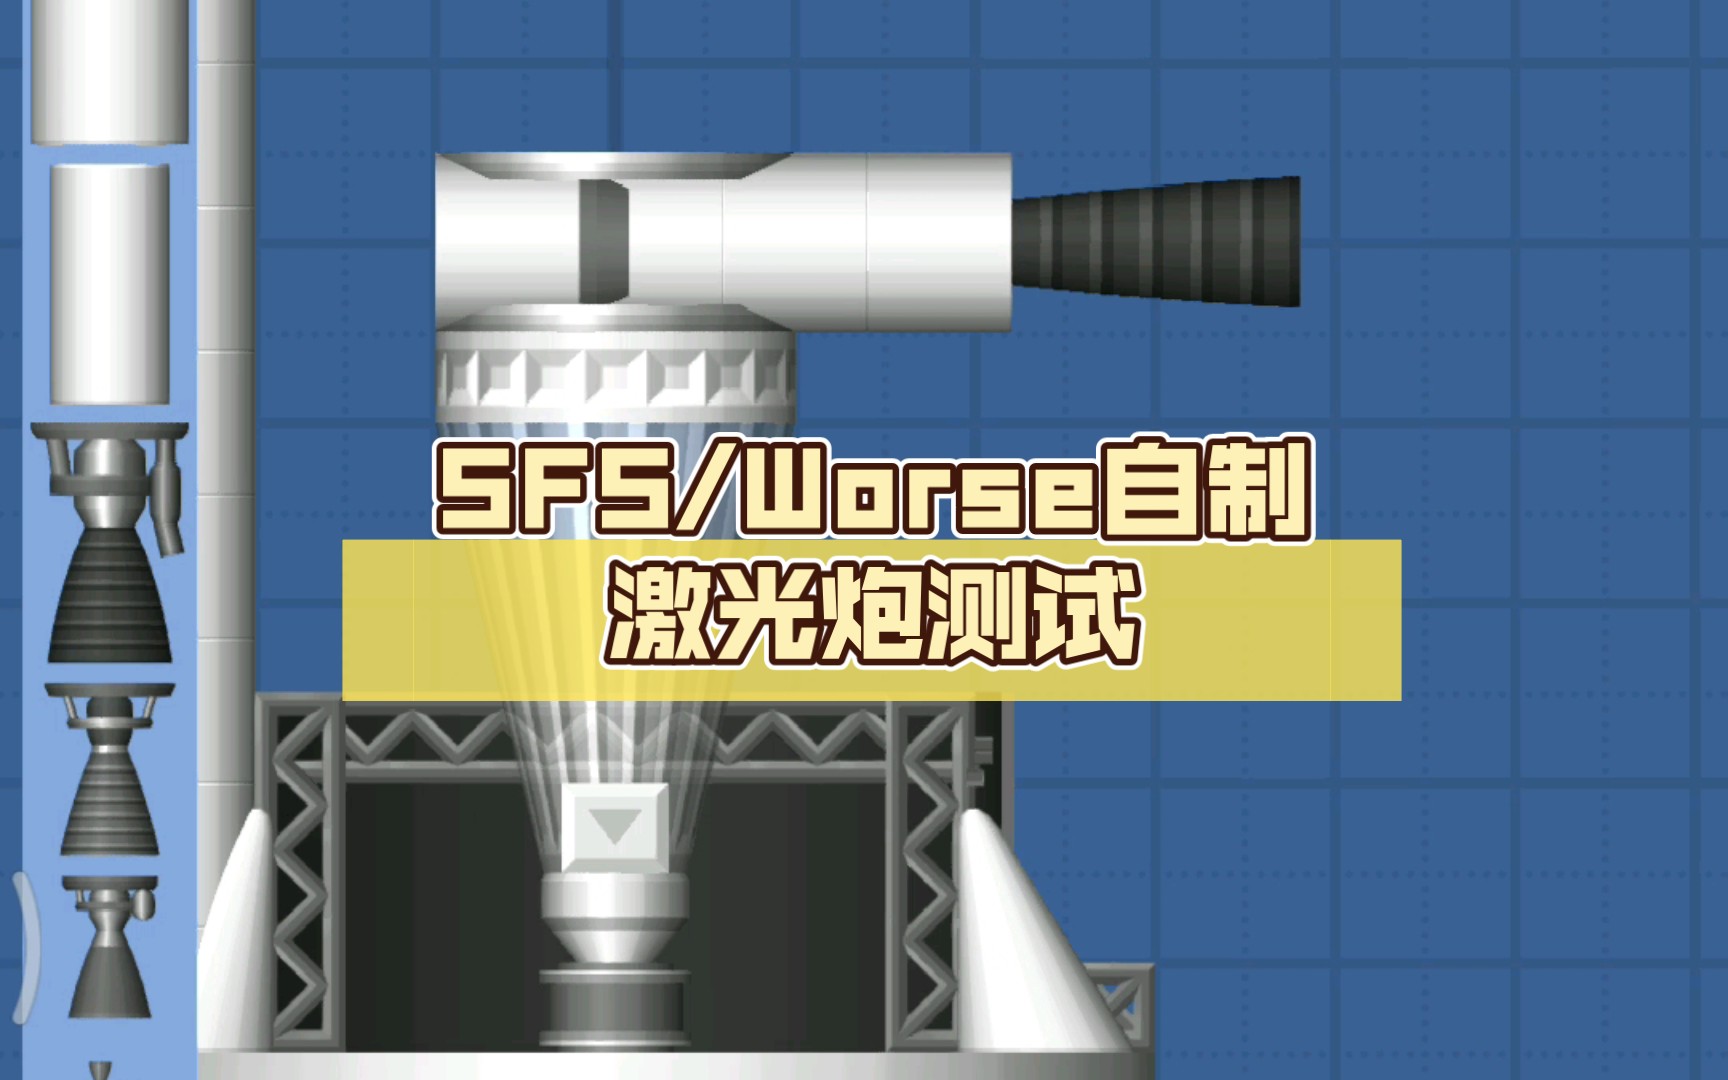 SFS/Worse自制激光炮测试